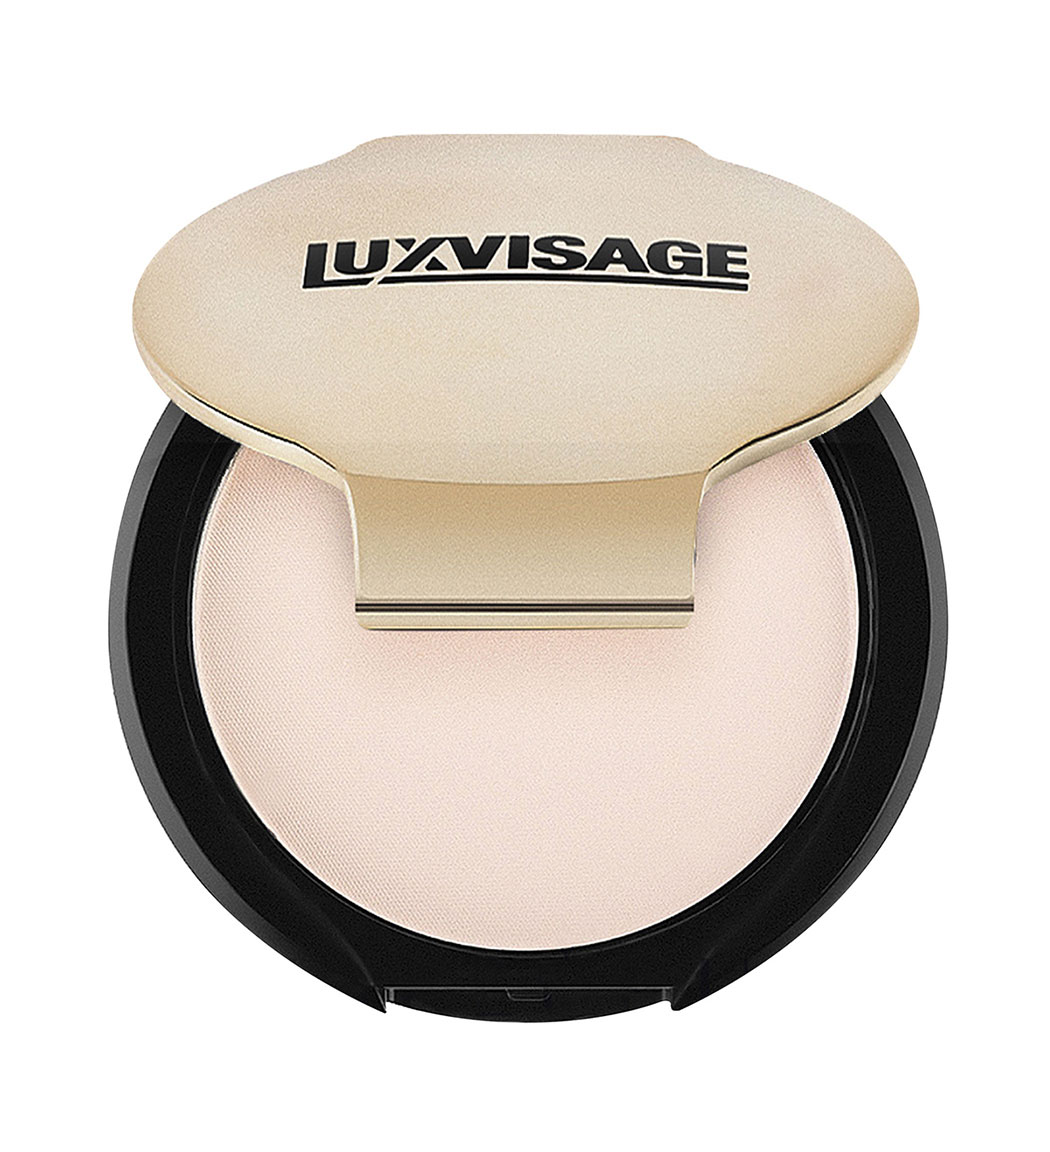 Luxvisage Компактная матирующая пудра, 10 г (Luxvisage, Лицо) цена и фото